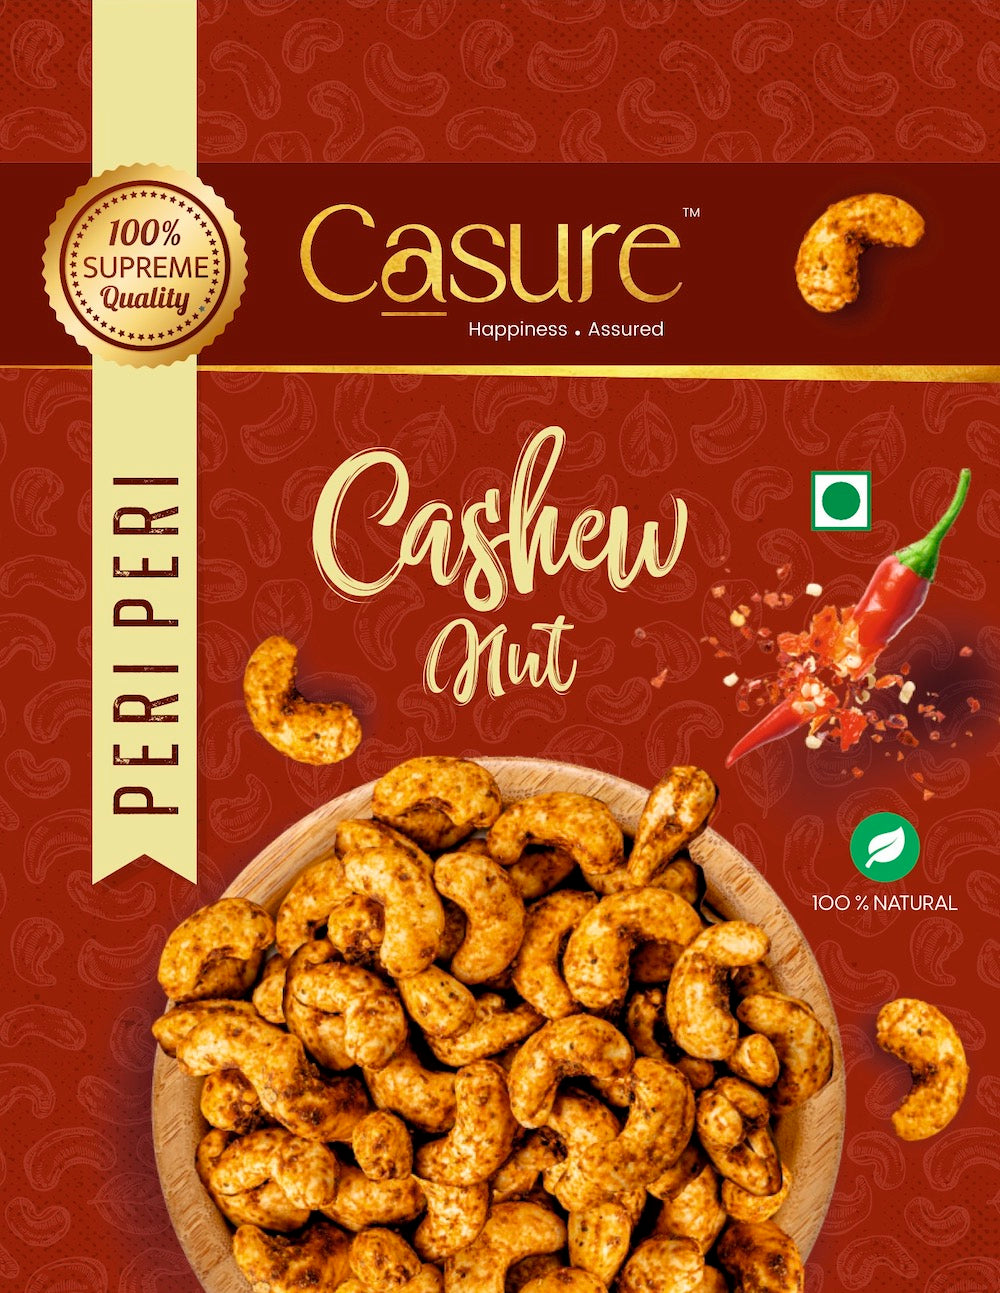 Flavored Cashews (Peri Peri), 100% Natural, 100 Grams (2 packs of 50 gm each)